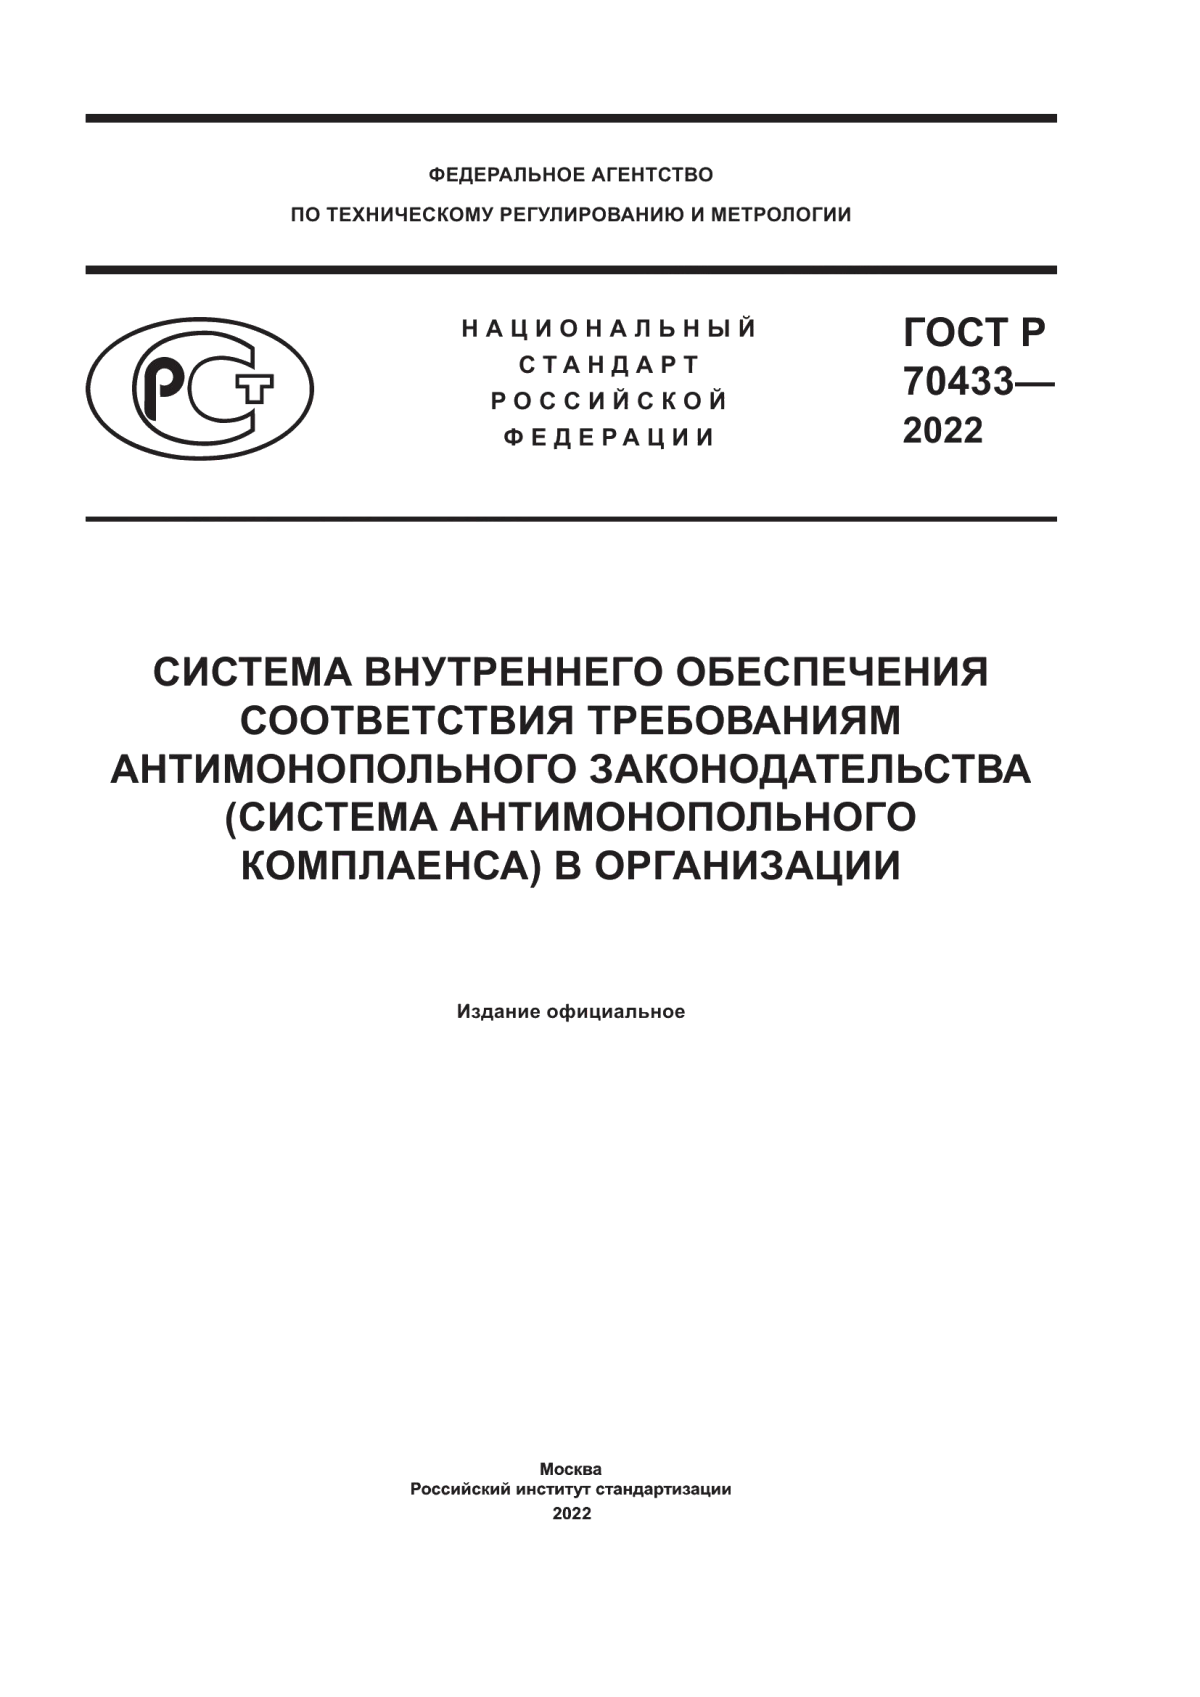 ГОСТ Р 70433-2022 Система внутреннего обеспечения соответствия требованиям антимонопольного законодательства (система антимонопольного комплаенса) в организации